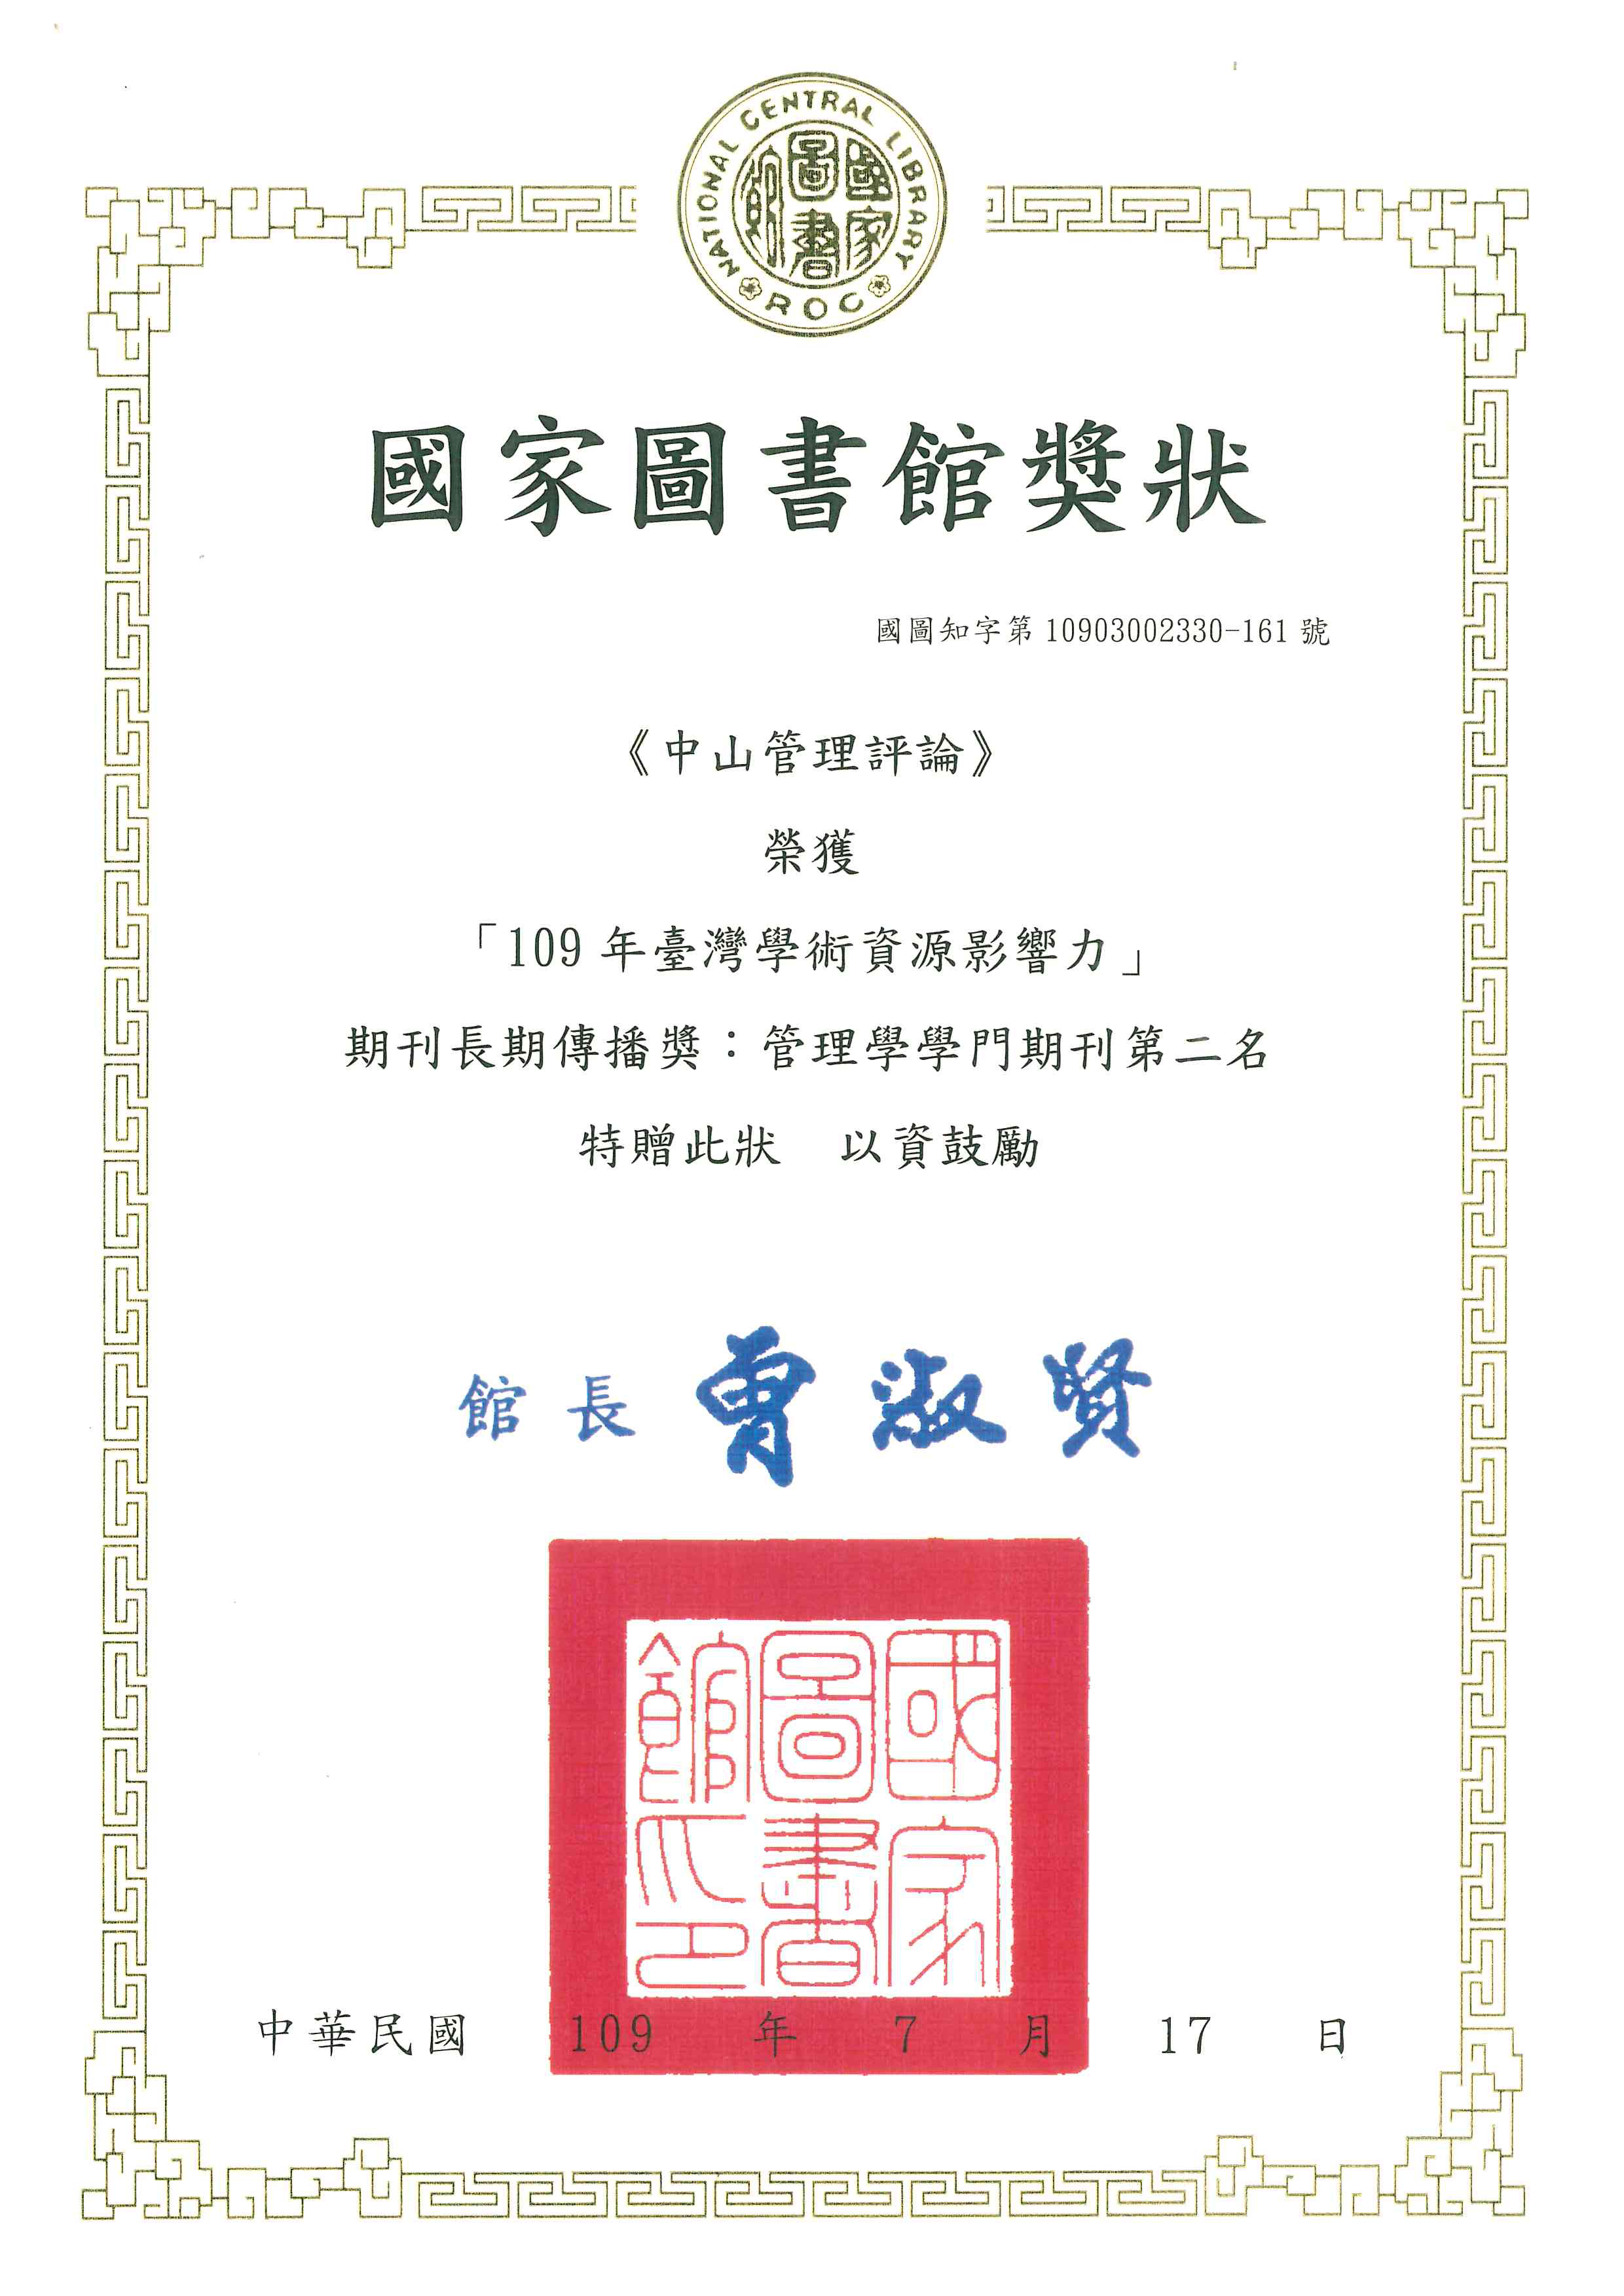 《中山管理評論》榮獲國家圖書館「109年臺灣學術資源影響力」期刊